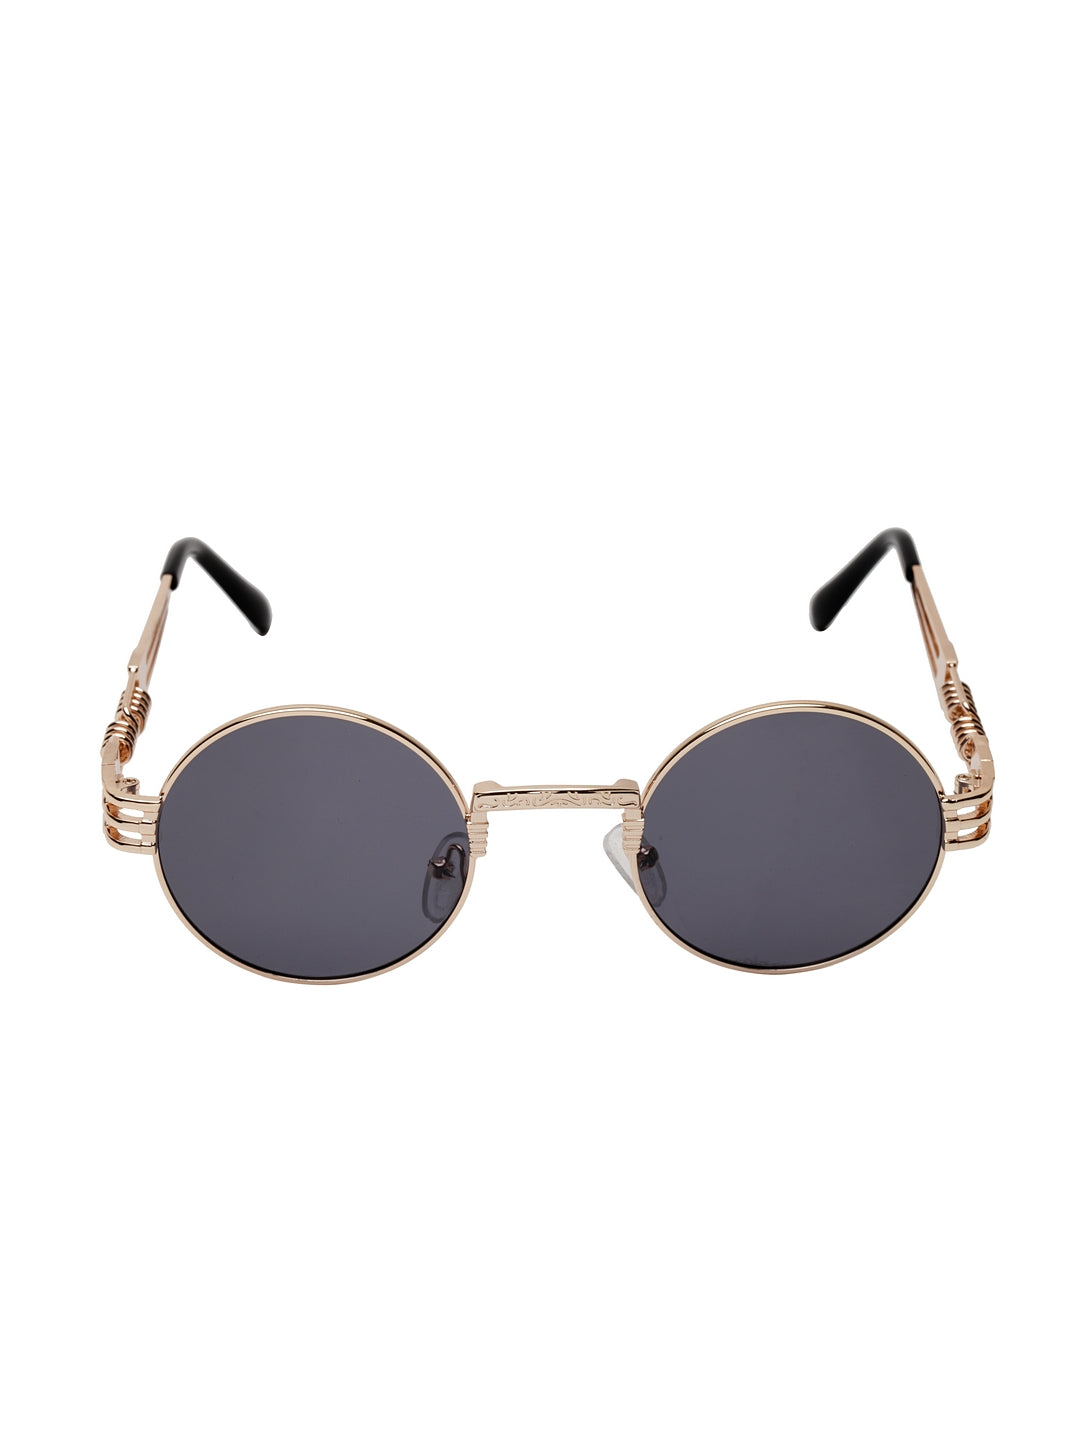 Avant-Garde Paris Cool Fashion Steampunk Sunglasses